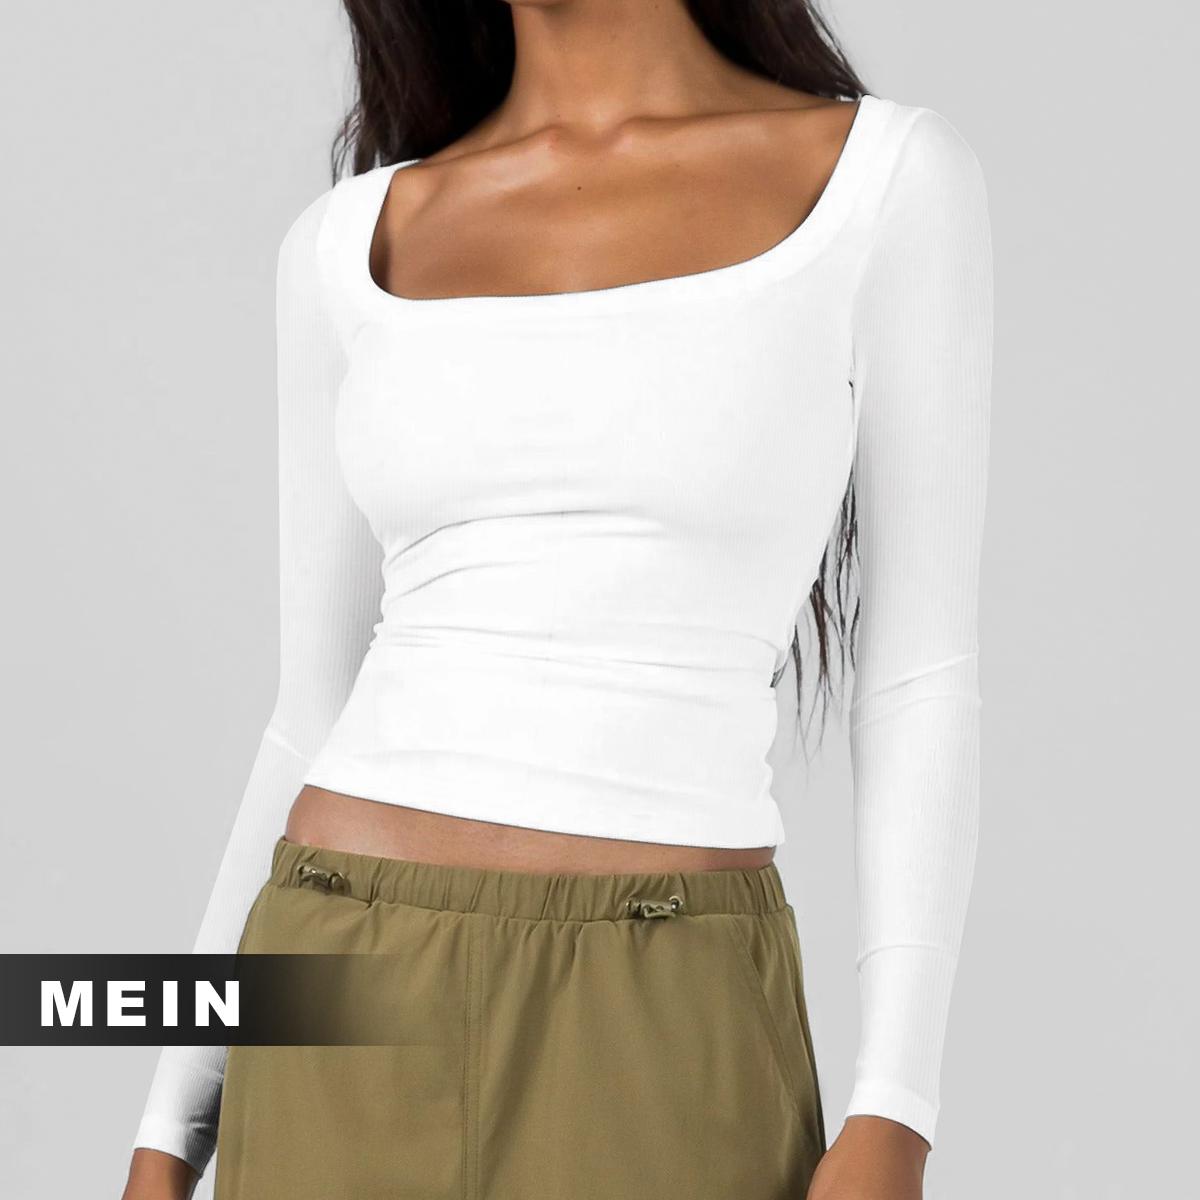 [MEIN] 002 Kaos Polos Long Sleeve Shirt Wanita Top Pendek Baju Crop Oblong Atasan Katun Panjang Dewasa